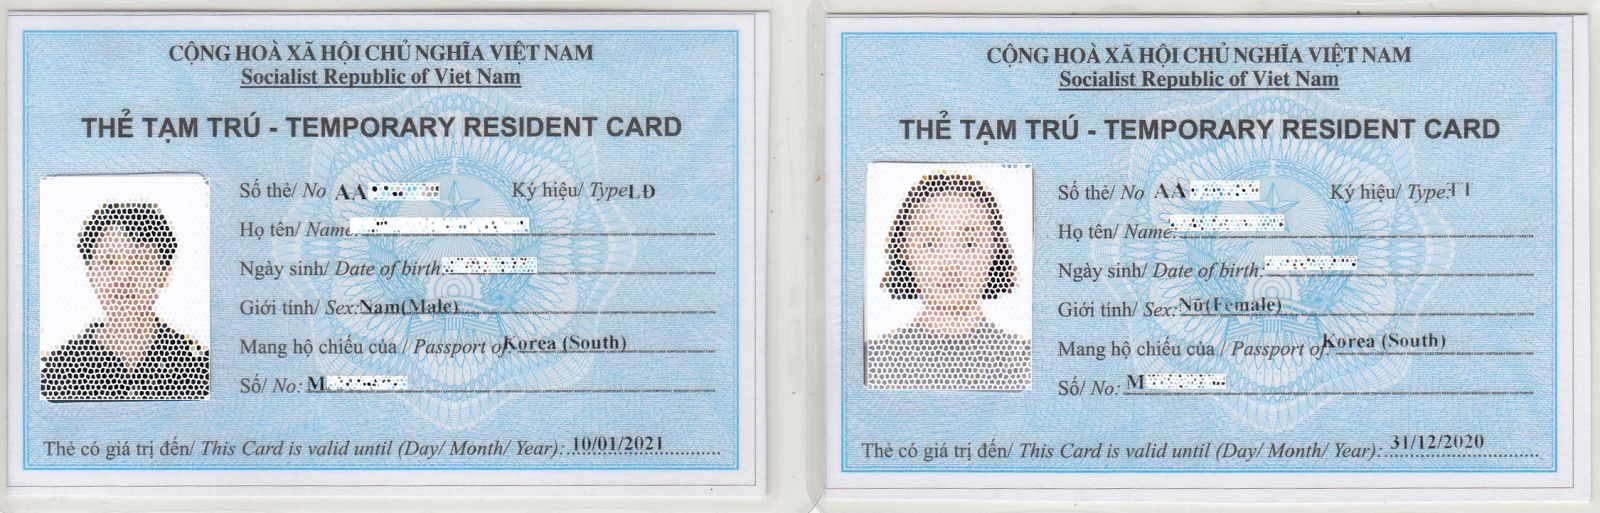 Những điều cần biết về thẻ tạm trú cho người nước ngoài ở Việt Nam